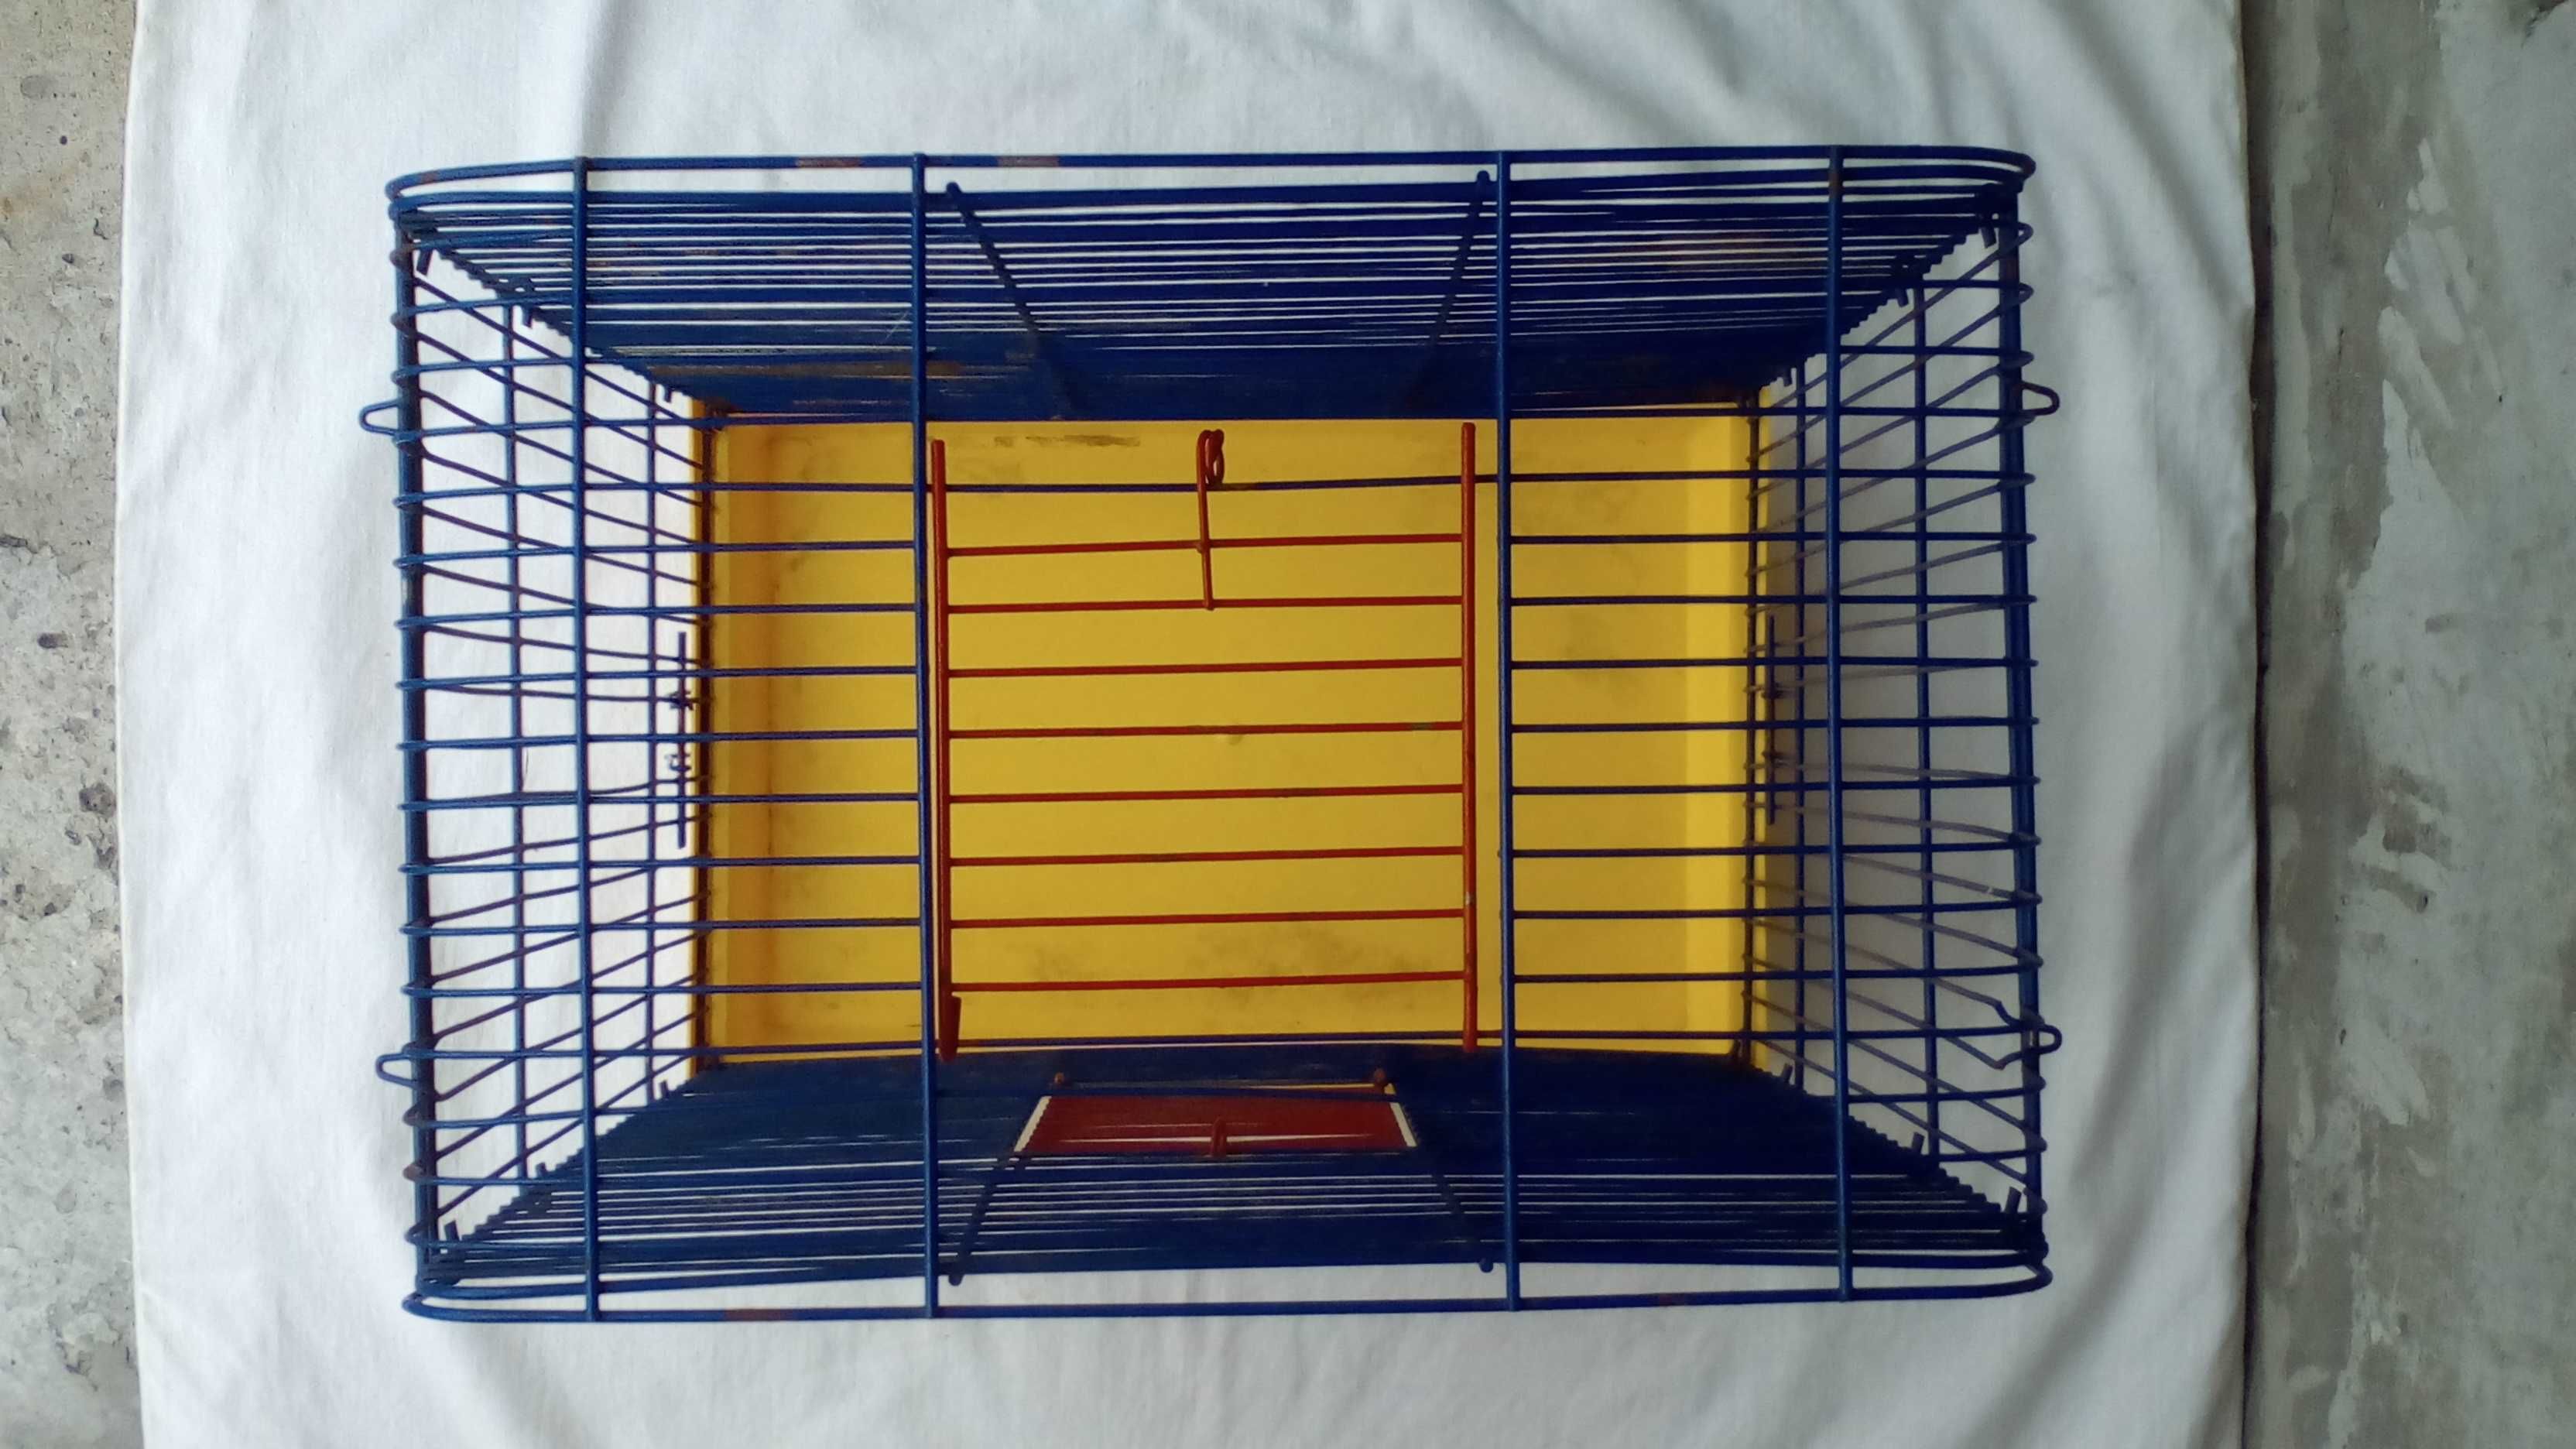 клетка для птиц или грызунов (40 см x 33 см x 21 см)